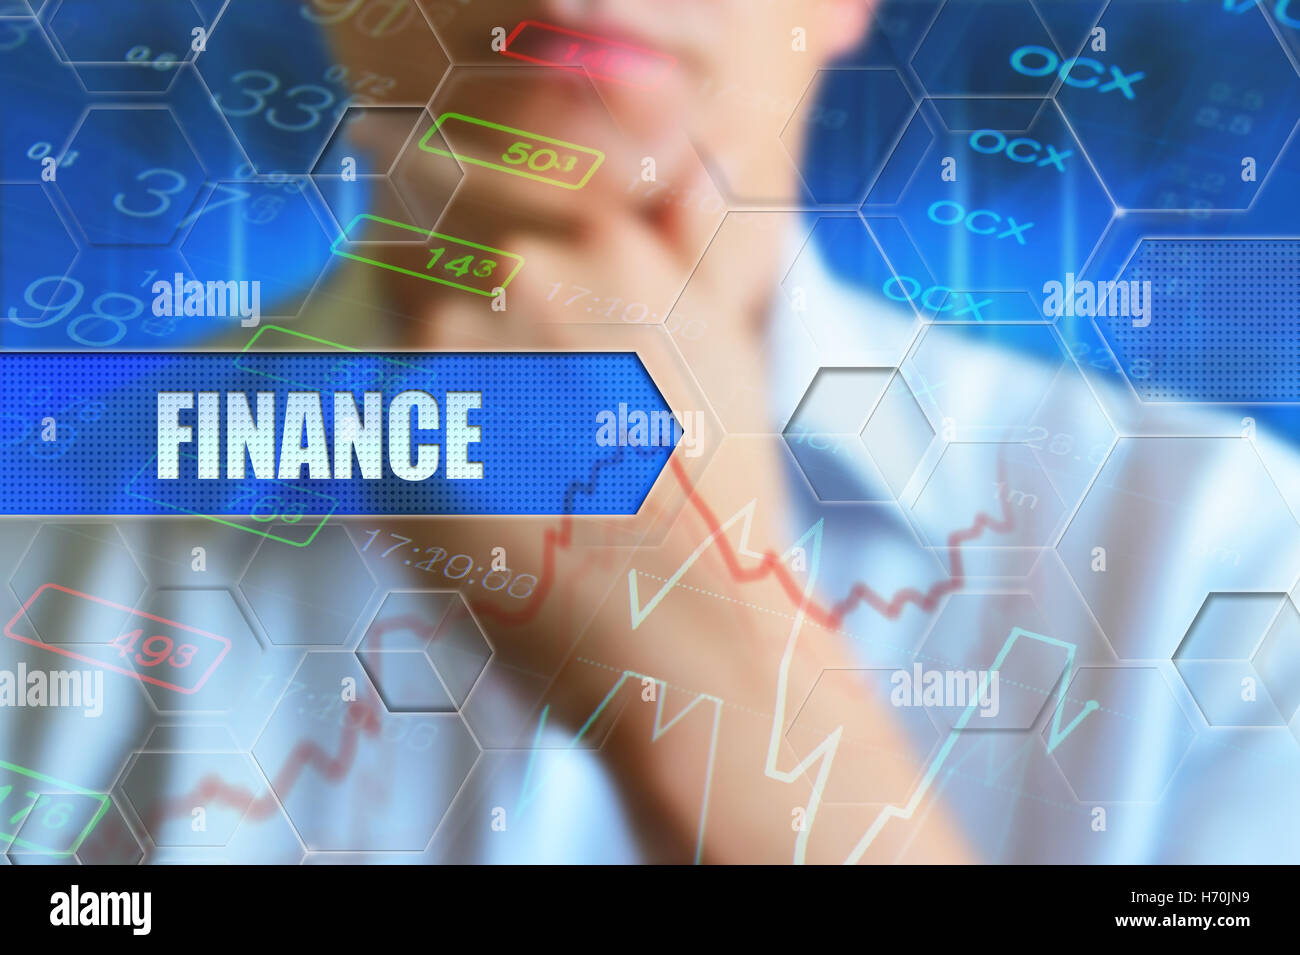 Concepto global finance wallpaper para financieros, las finanzas mundiales, la economía global, Business News Foto de stock